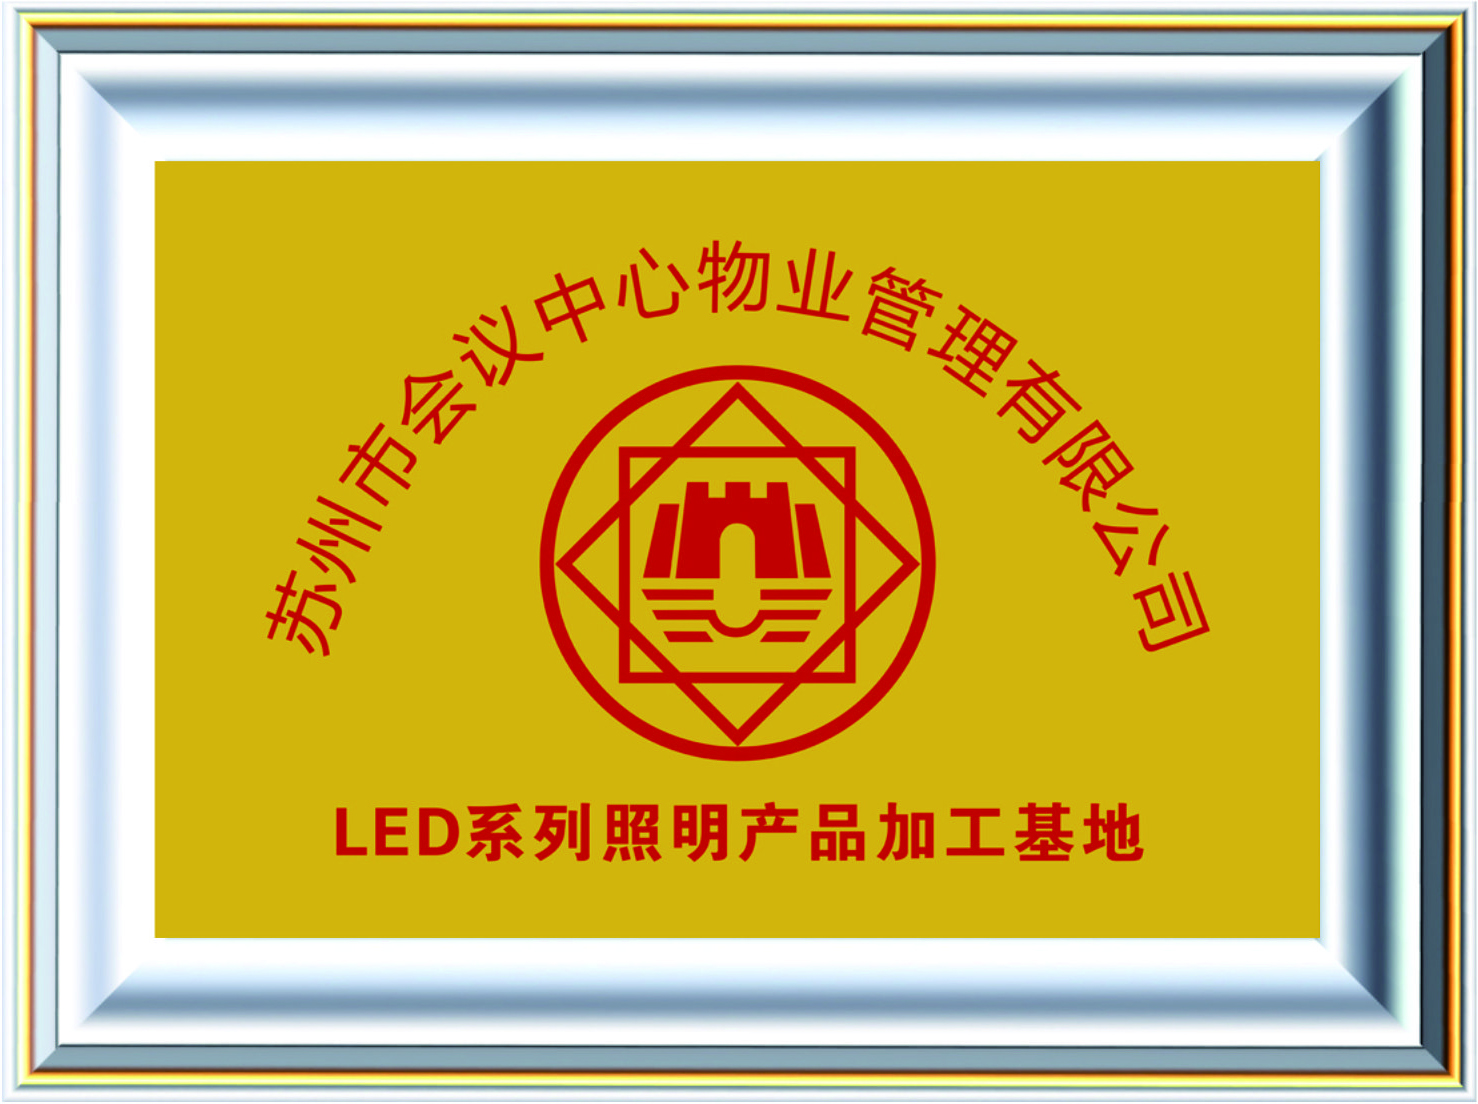 苏州会议中心物业管理有限公司LED加工基地.jpg